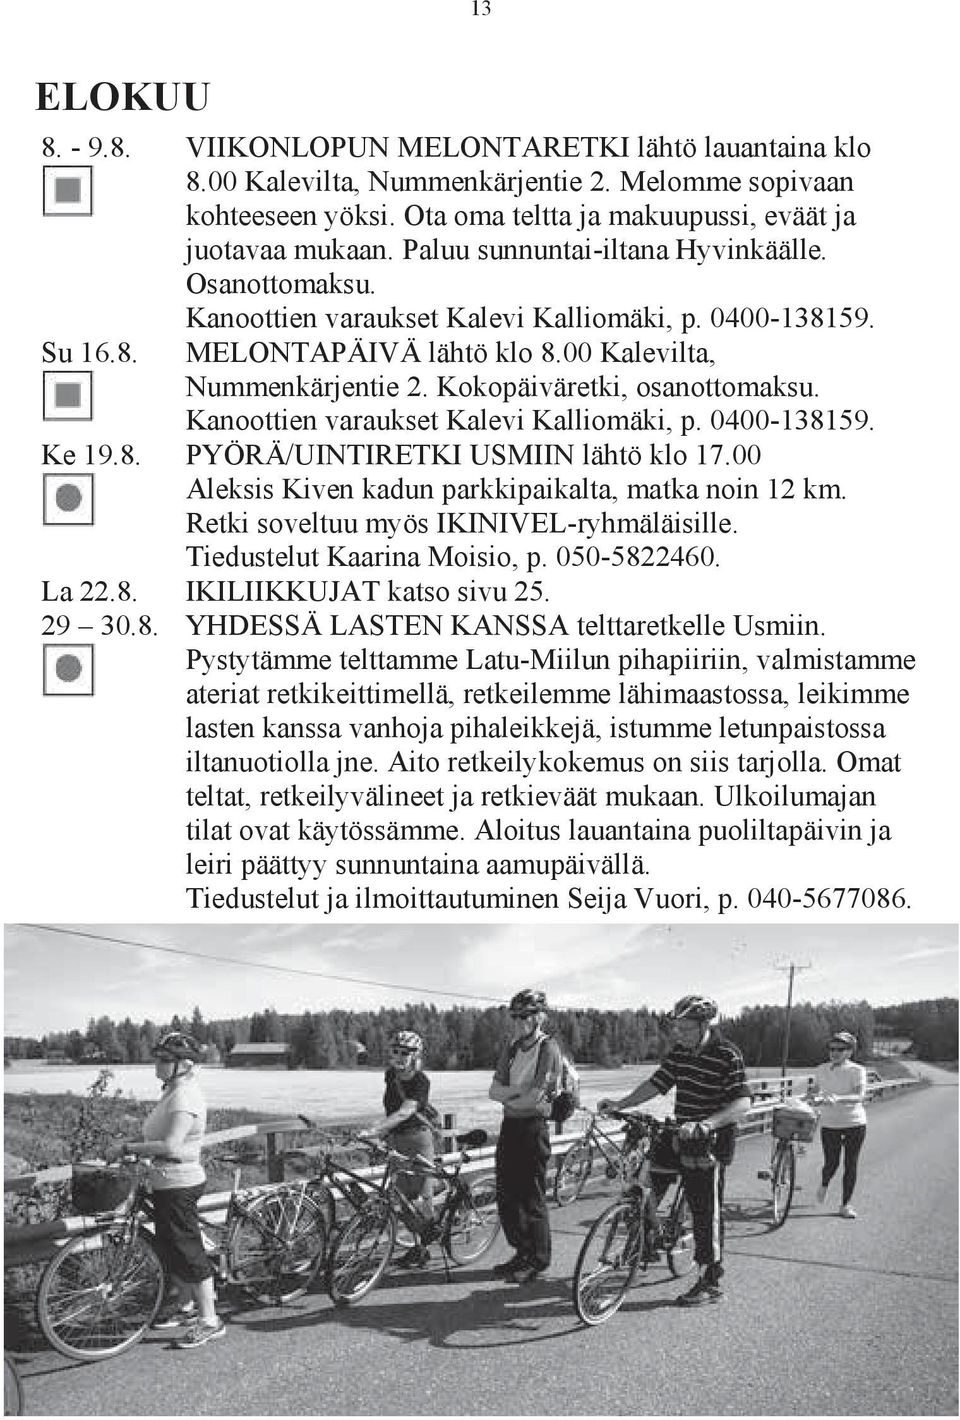 Kokopäiväretki, osanottomaksu. Kanoottien varaukset Kalevi Kalliomäki, p. 0400-138159. Ke 19.8. PYÖRÄ/UINTIRETKI USMIIN lähtö klo 17.00 Aleksis Kiven kadun parkkipaikalta, matka noin 12 km.